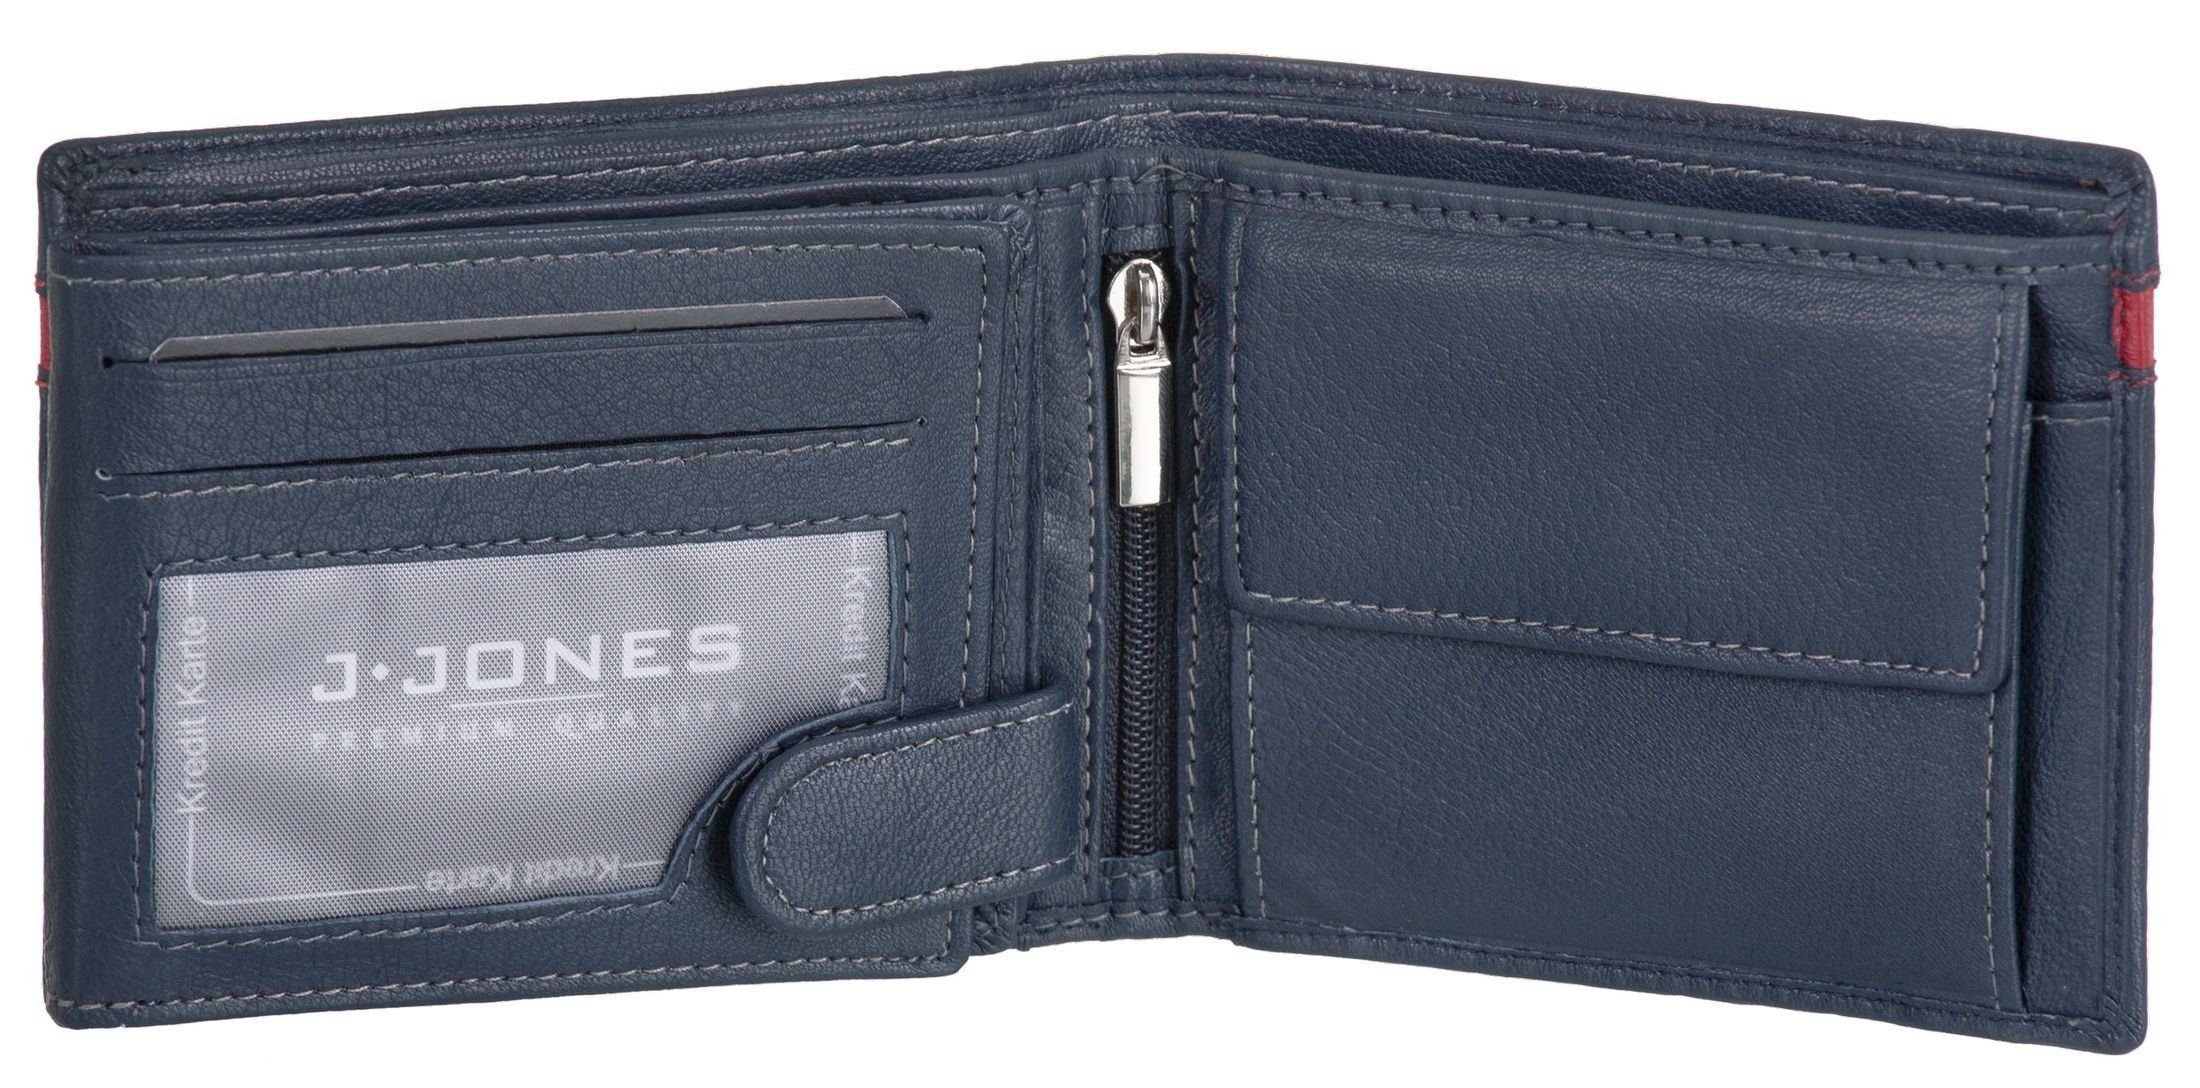 faltbar J.Jones Münzfach Echt Geldbörse, Geldbeutel marineblau Leder Portemonnaie Geldbörse mit RFID-Schutz